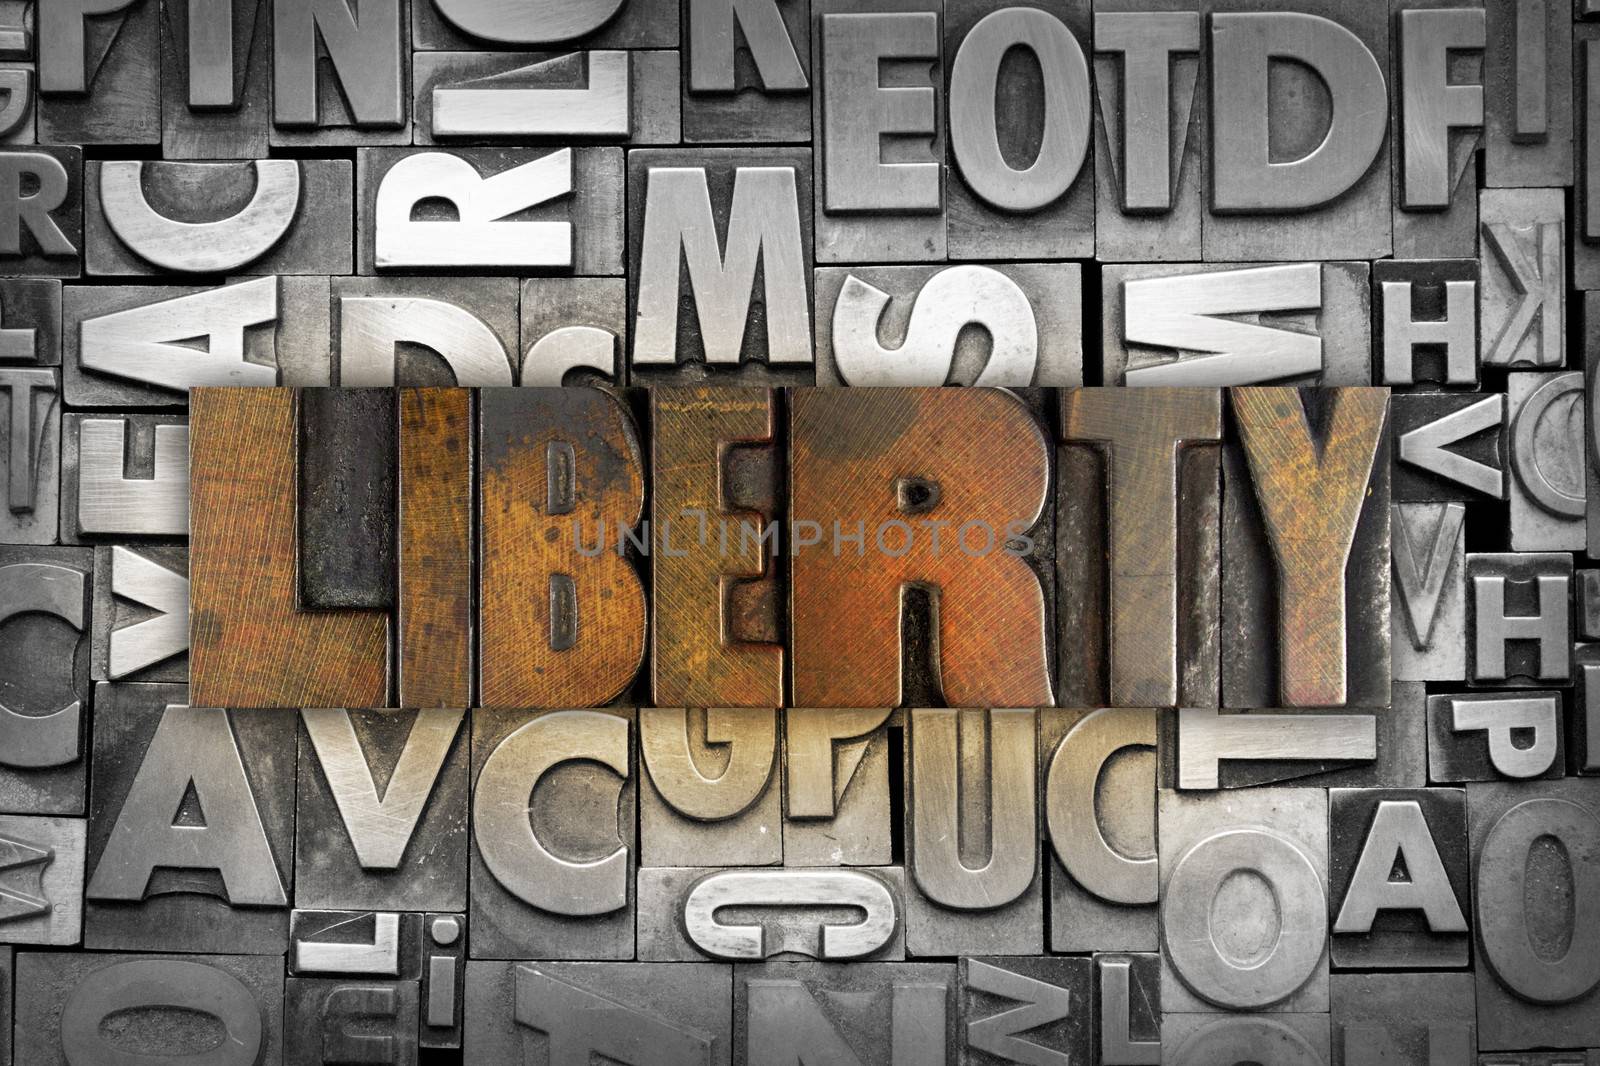 The word LIBERTY written in vintage letterpress type